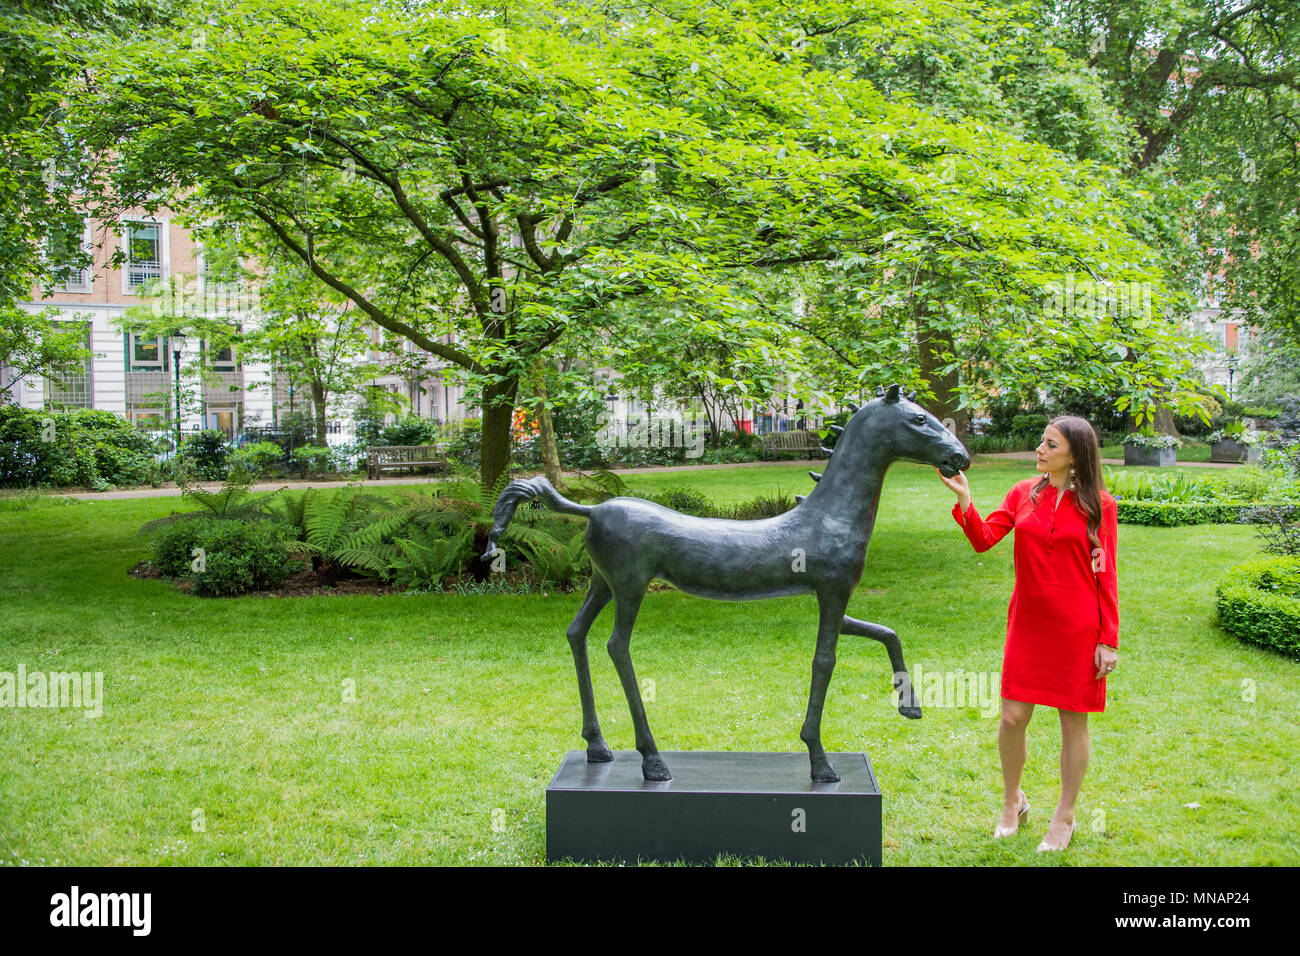 Londra, Regno Unito. 16 maggio 2018. Barry Flanagan, campo Giorno 2 (Kore cavallo), 1987 - Christie's presenterà 'Sculpture nella piazza di' un giardino di sculture insieme all'interno di St James's Square, Londra, in vista del pubblico dal 17 maggio al 20 giugno 2018. Credito: Guy Bell/Alamy Live News Foto Stock